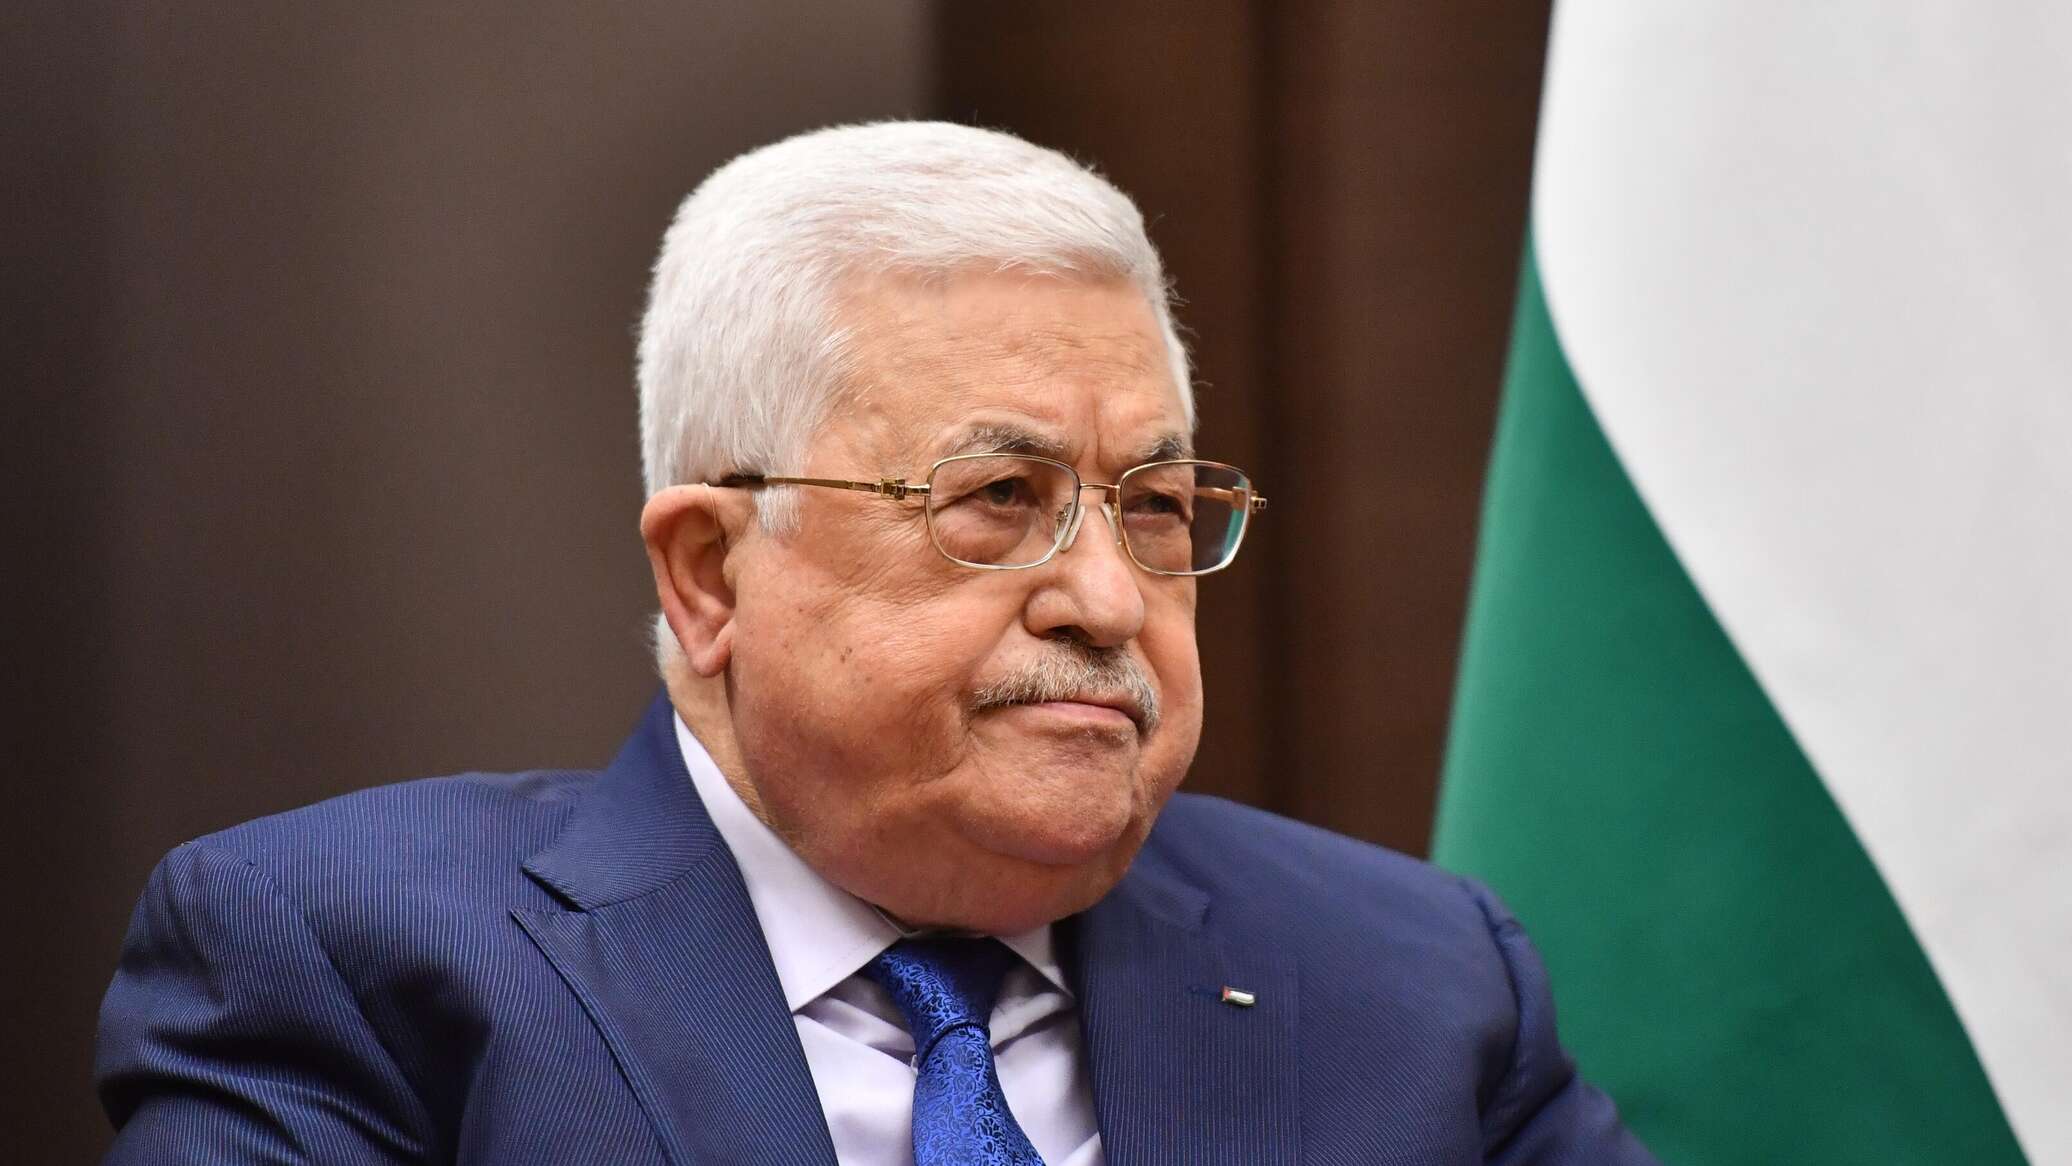 الرئاسة الفلسطينية: دون قيام دولة فلسطينية لن يكون هناك أمن واستقرار في المنطقة